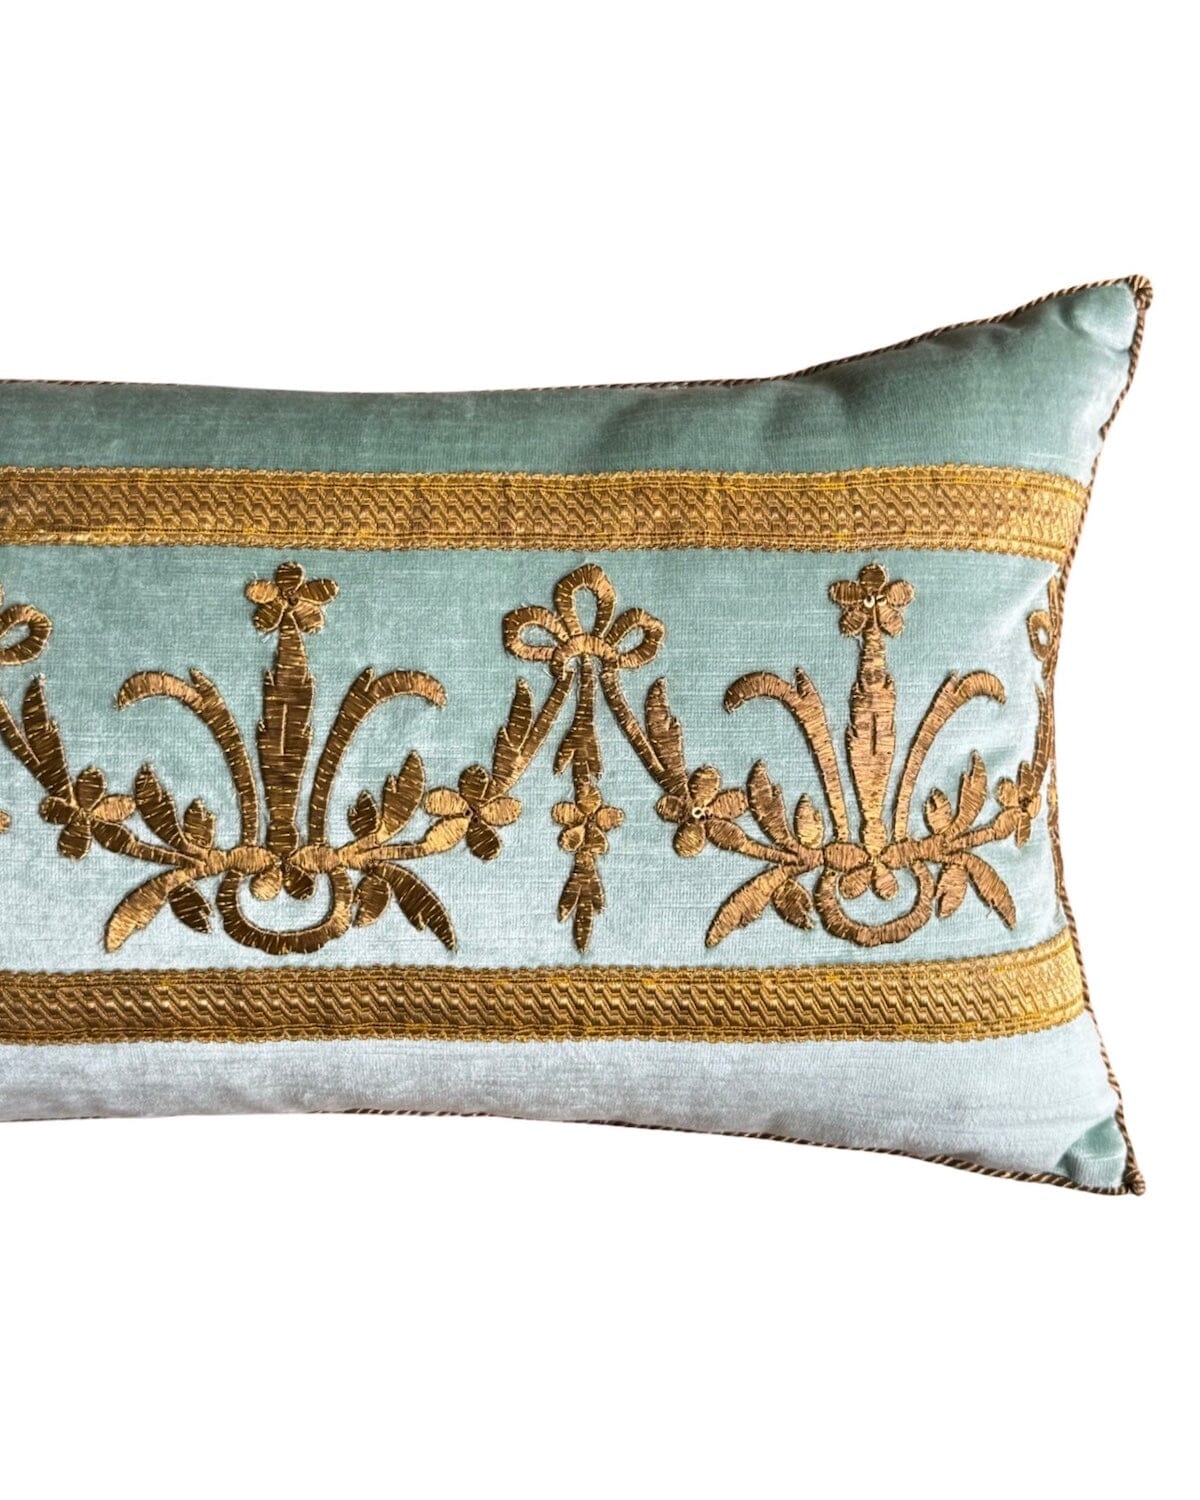 Antique Ottoman Empire Raised Gold Embroidery (#E130523 | 13 1/4 x 29 1/2